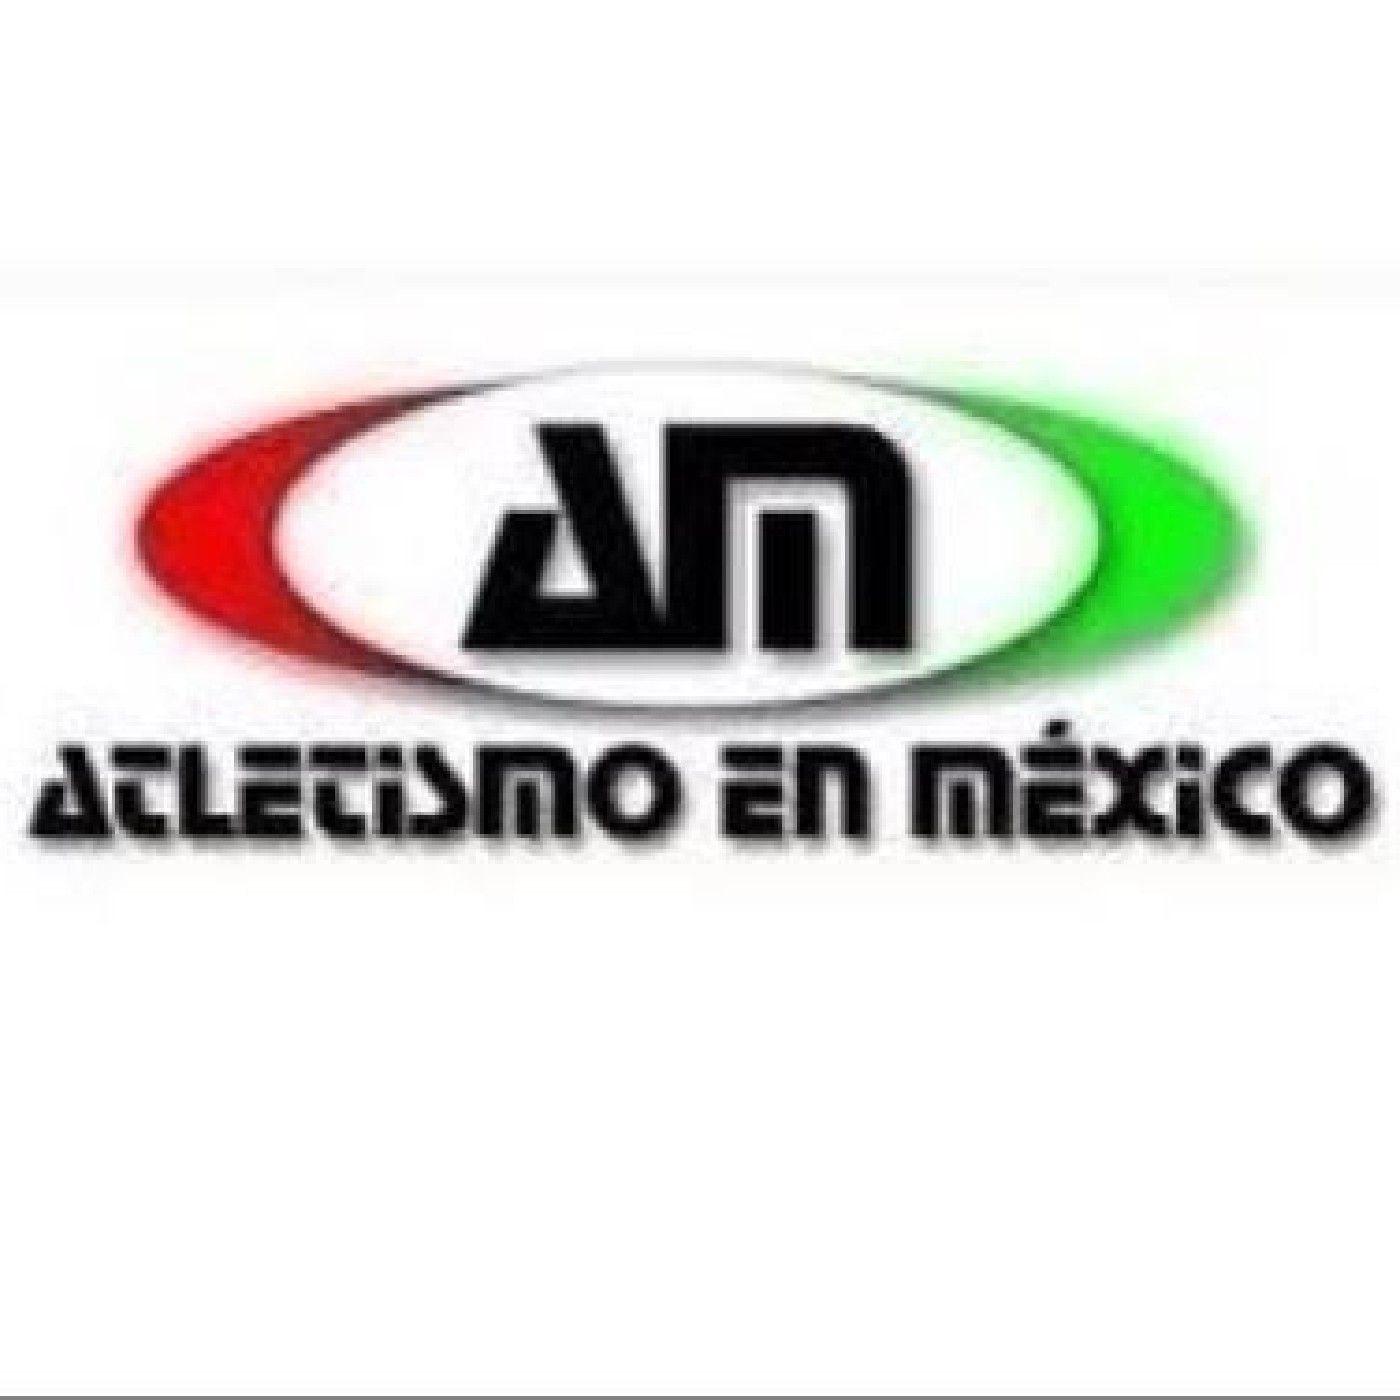 ATLETISMO EN MEXICO's show